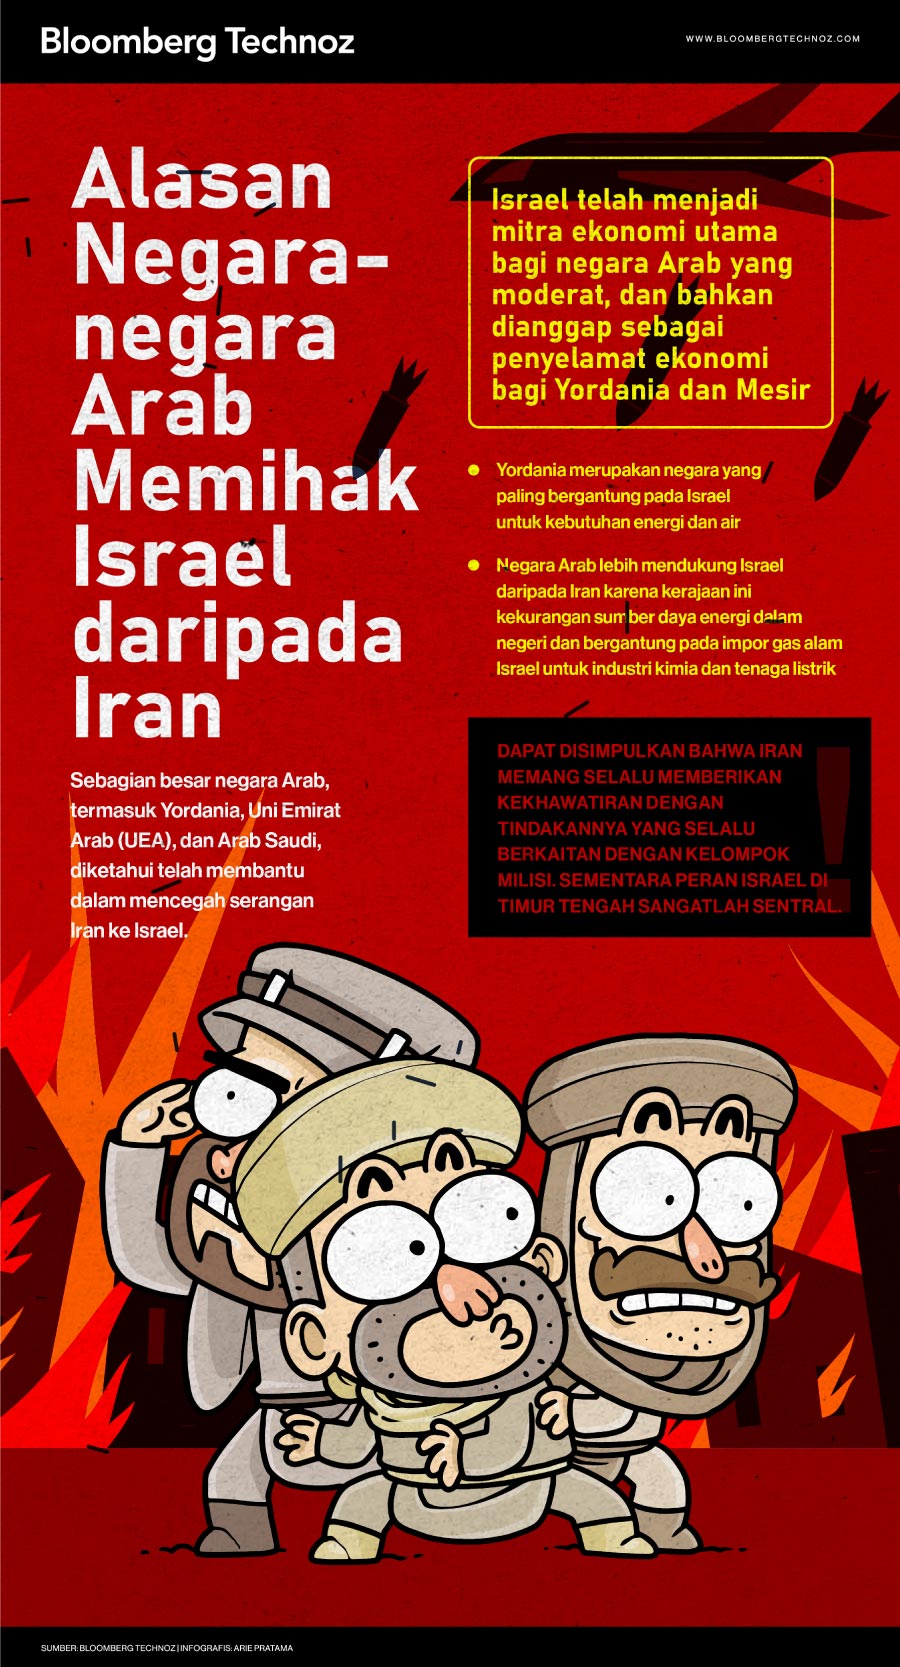 Alasan Negara-negara Arab Memihak Israel daripada Iran (Bloomberg Technoz/Arie Pratama)